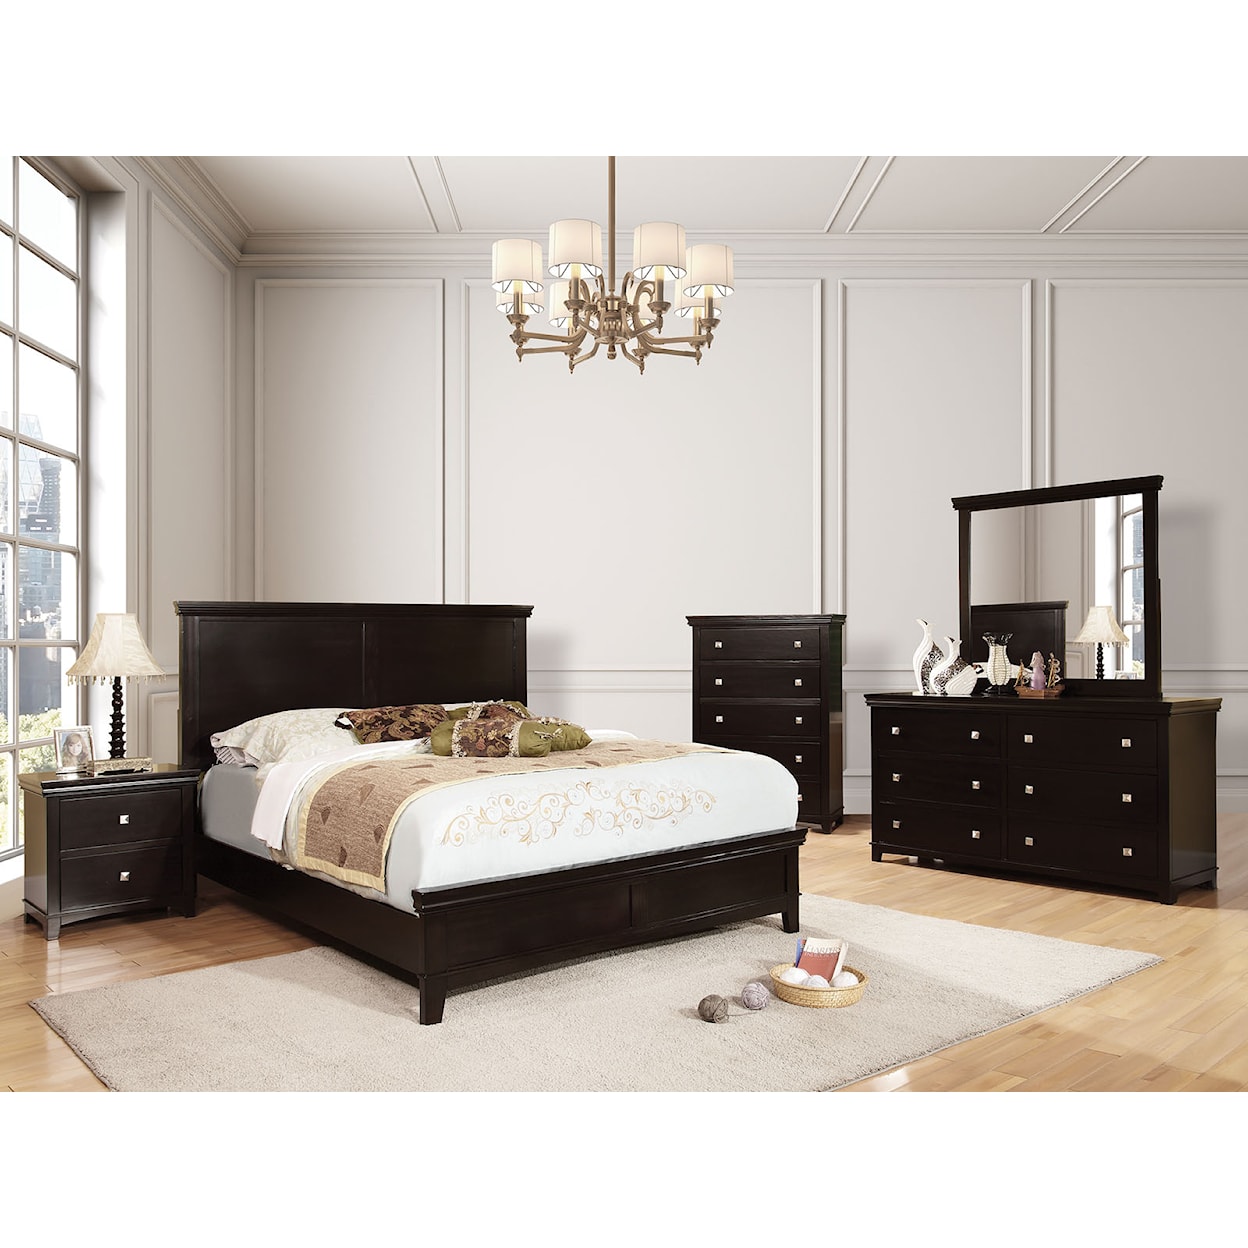 Furniture of America Spruce Queen Bedroom Set